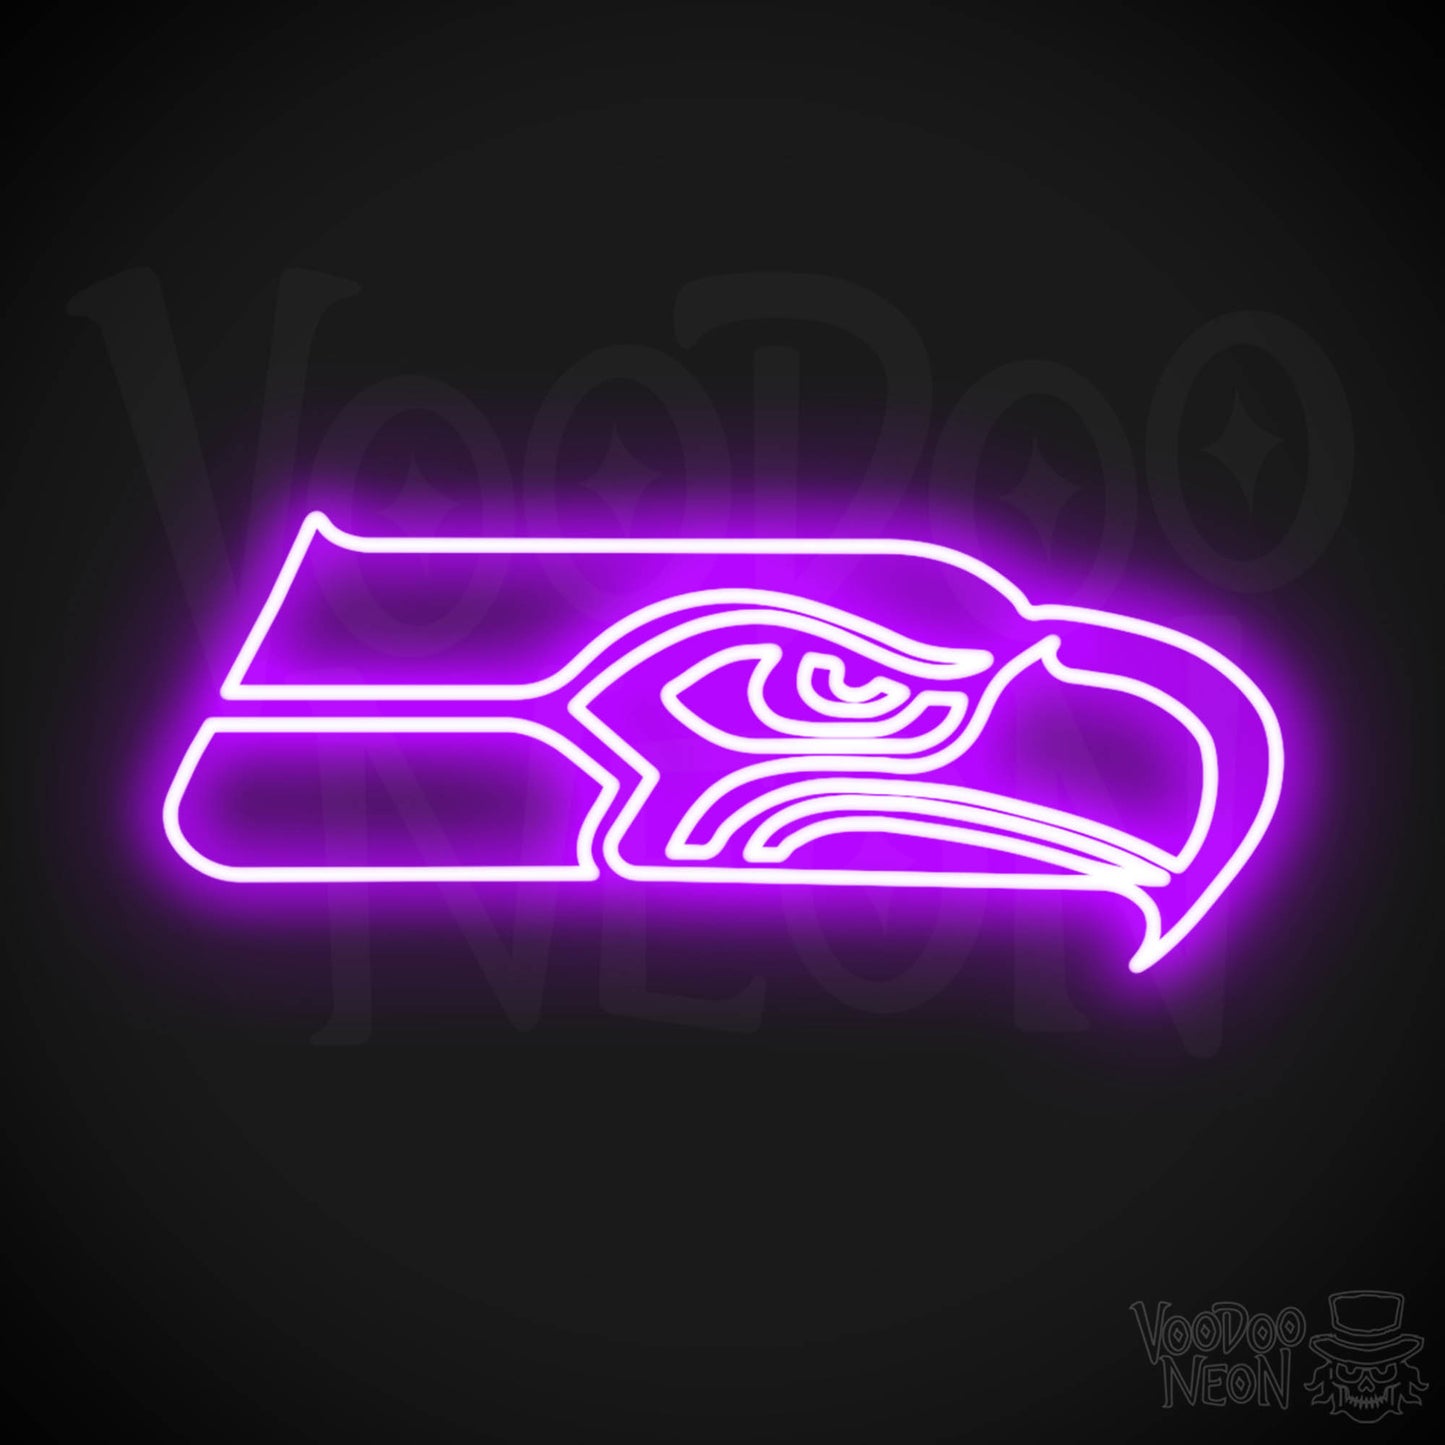 Seattle Seahawks Neon Sign - Seattle Seahawks Sign - Neon Seahawks Logo Wall Art - Color Purple